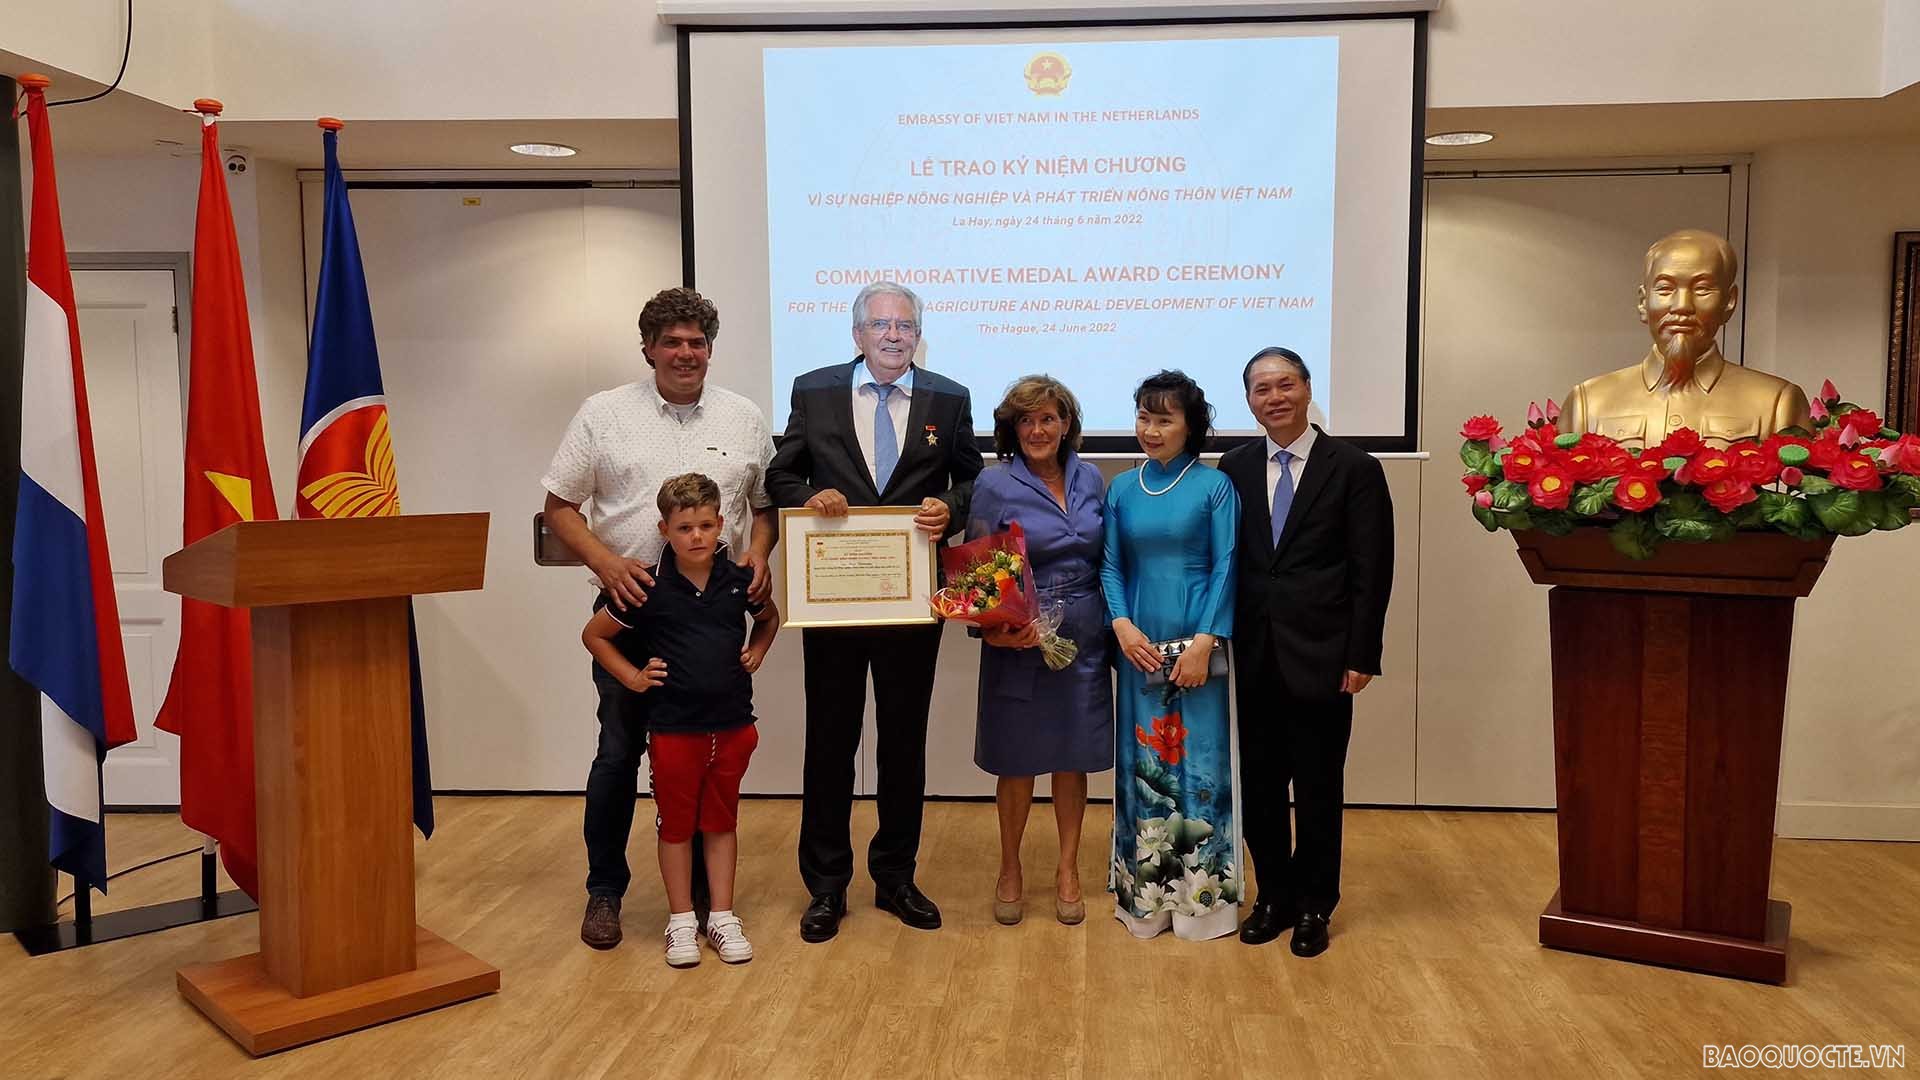 Đại sứ Phạm Việt Anh trao kỷ niệm chương và tặng hoa chúc mừng ông Cees Veerman và gia đình.